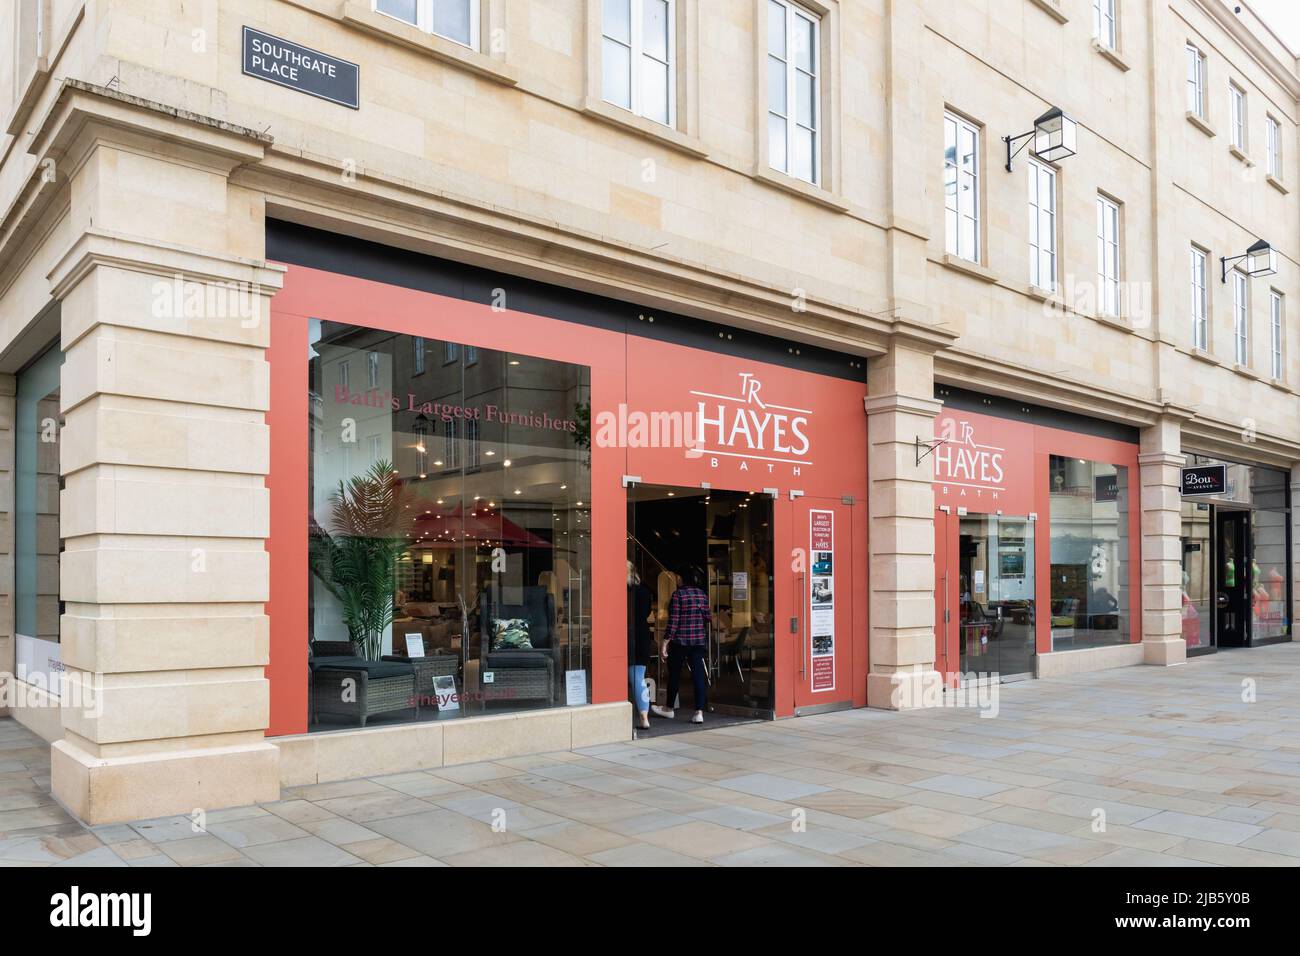 TR Hayes - il più grande Furnishers di Bath ha un negozio temporaneo pop-up nel Southgate Shopping Centre, City of Bath. Somerset, Inghilterra, Regno Unito Foto Stock